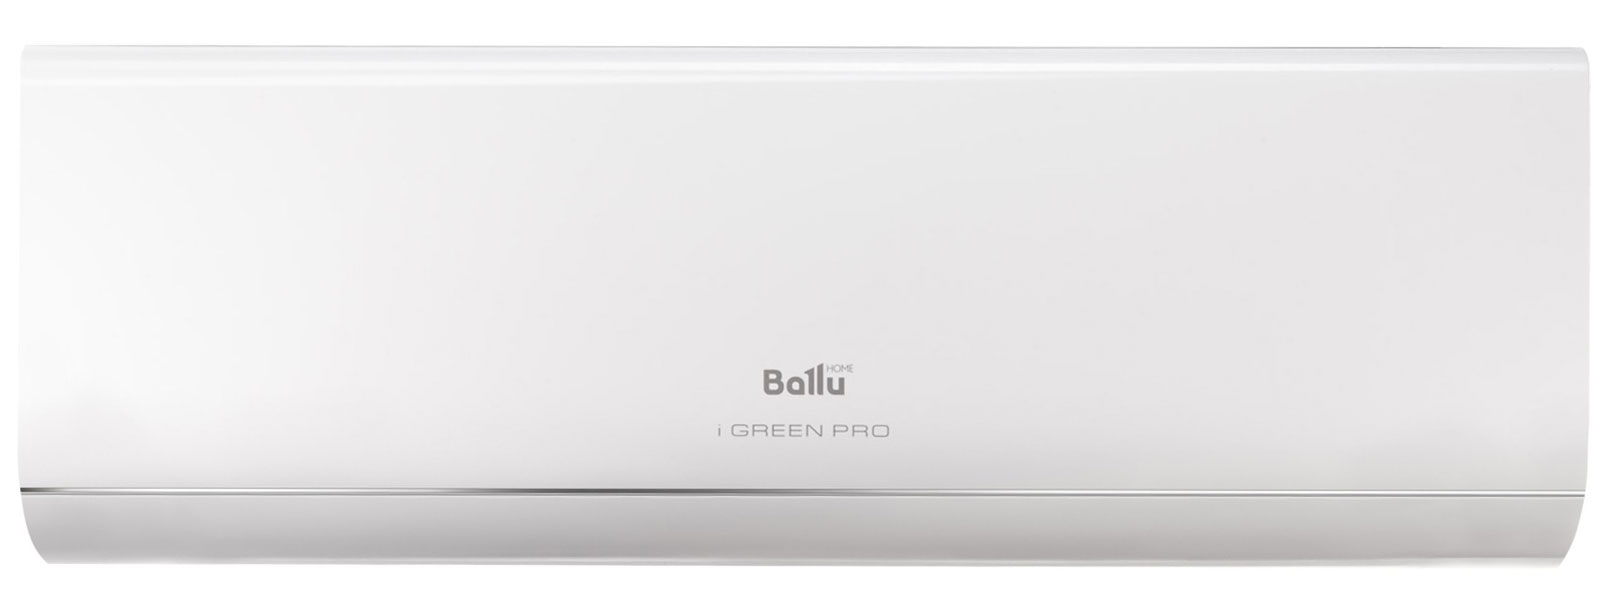 Сплит-система Ballu iGreen Pro BSAG-09HN8 комплект